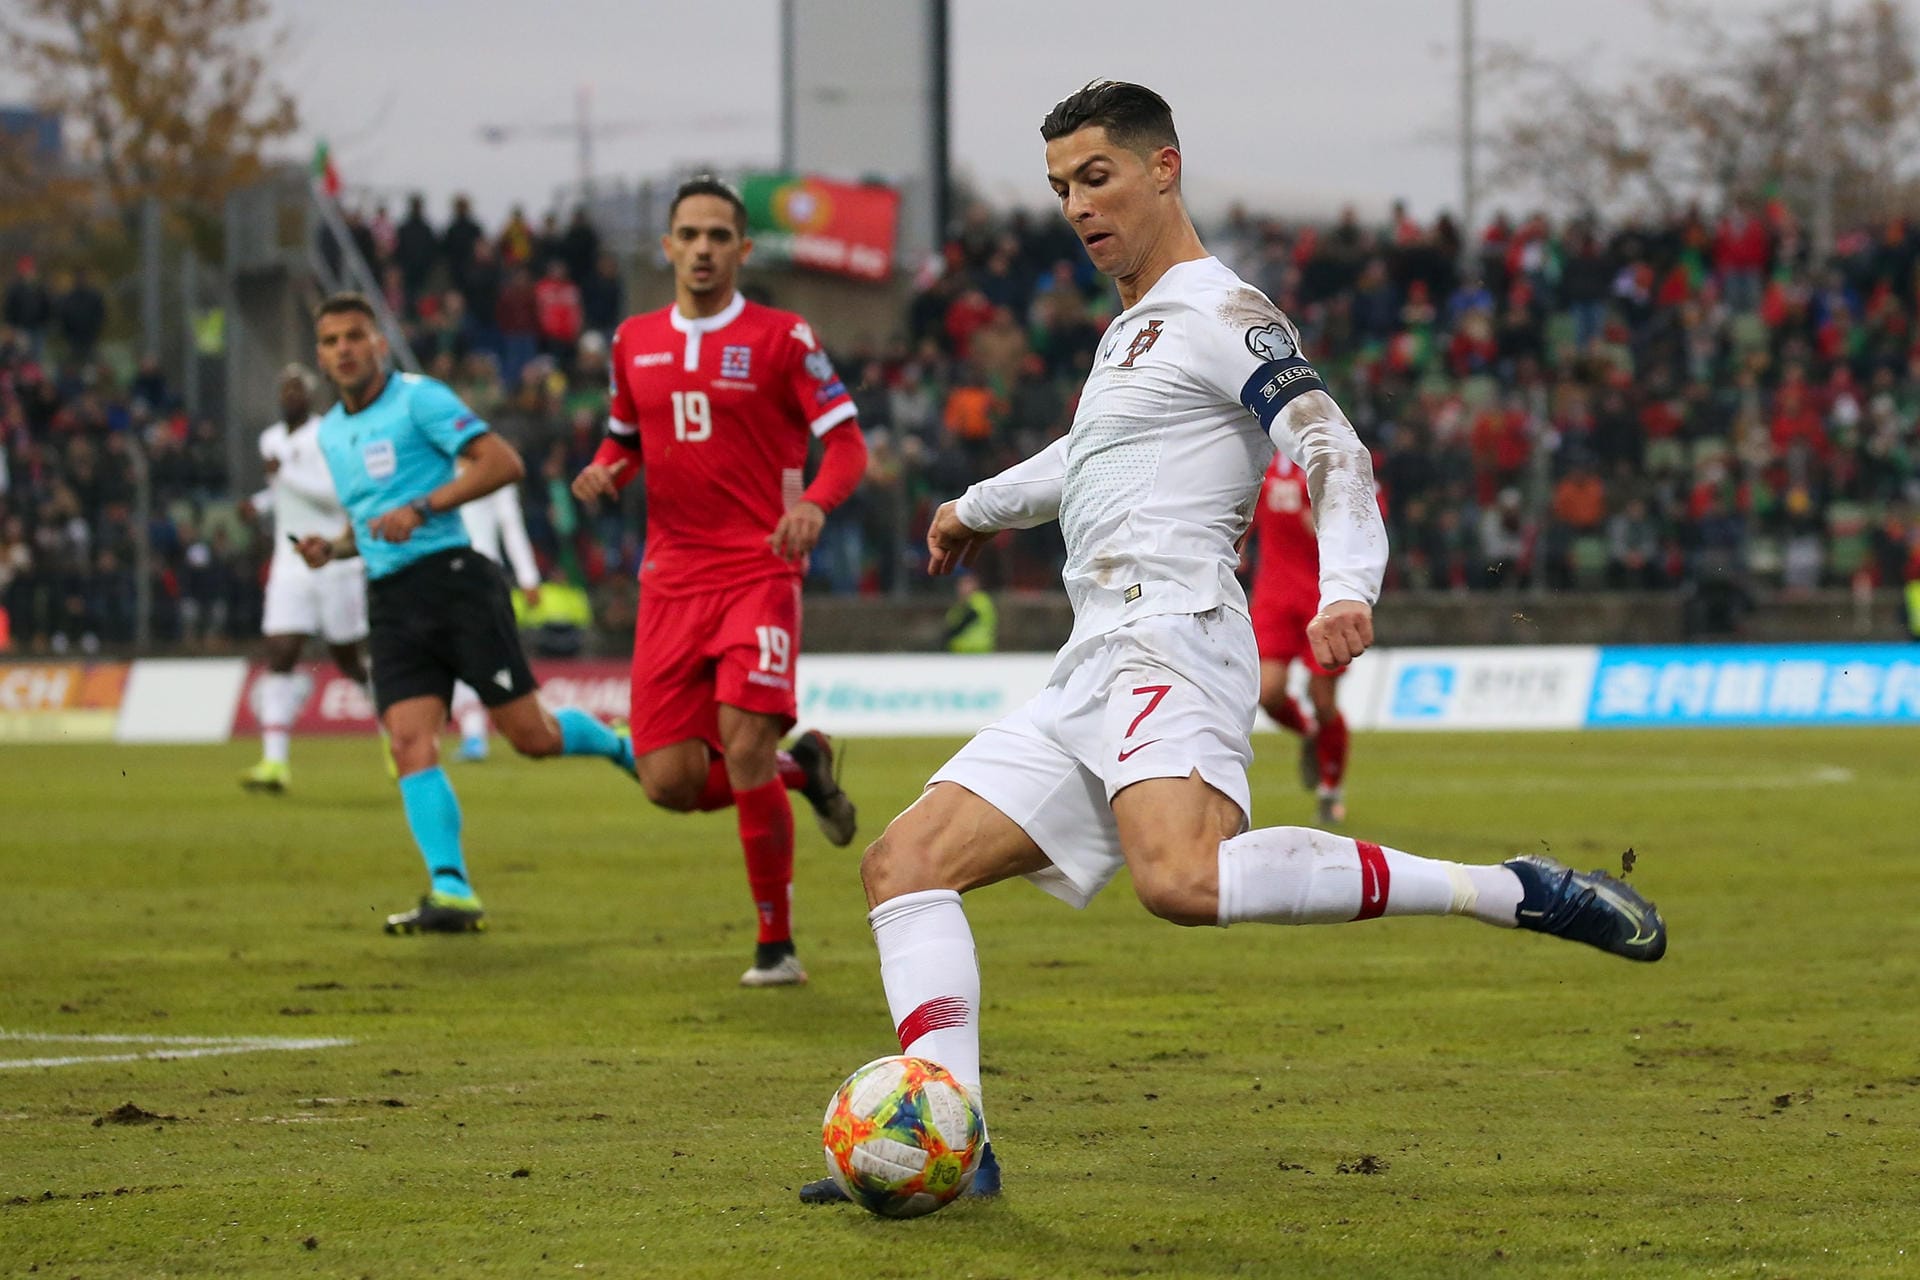 Cristiano Ronaldo und Titelverteidiger Portugal schafften erst am letzten Spieltag in Luxemburg die Qualifikation, mühten sich zu einem 2:0-Erfolg. Ob die Portugiesen ein ernsthafter Titelkandidat sind, bleibt anzuzweifeln. Aber wer weiß: Auch 2016 hatte niemand Portugal auf dem Zettel – der Rest ist Geschichte.